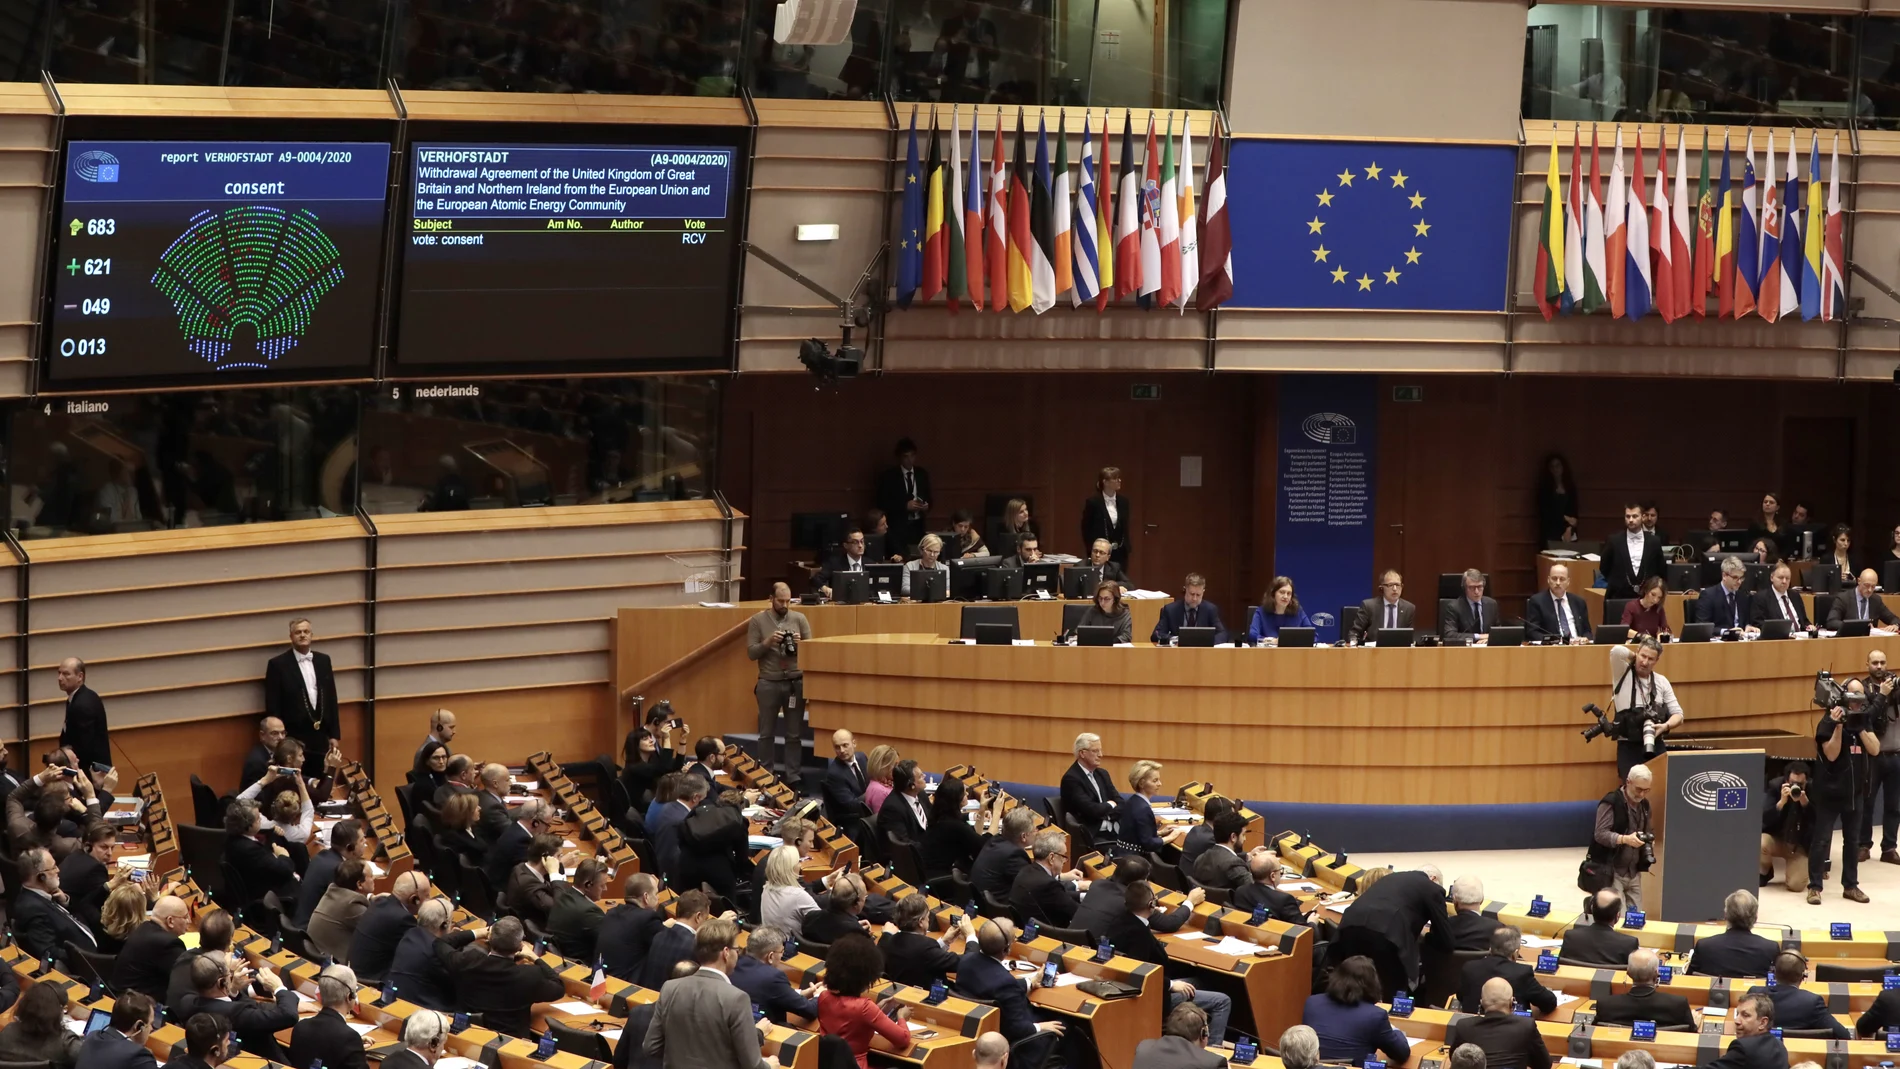 El Parlamento Europeo aprueba por 621 votos a favor, 49 en contra y 13 abstenciones el acuerdo de retirada del Reino Unido de la Unión Europea. Paso previo a la ratificación por parte del Consejo que se formalizará hoy